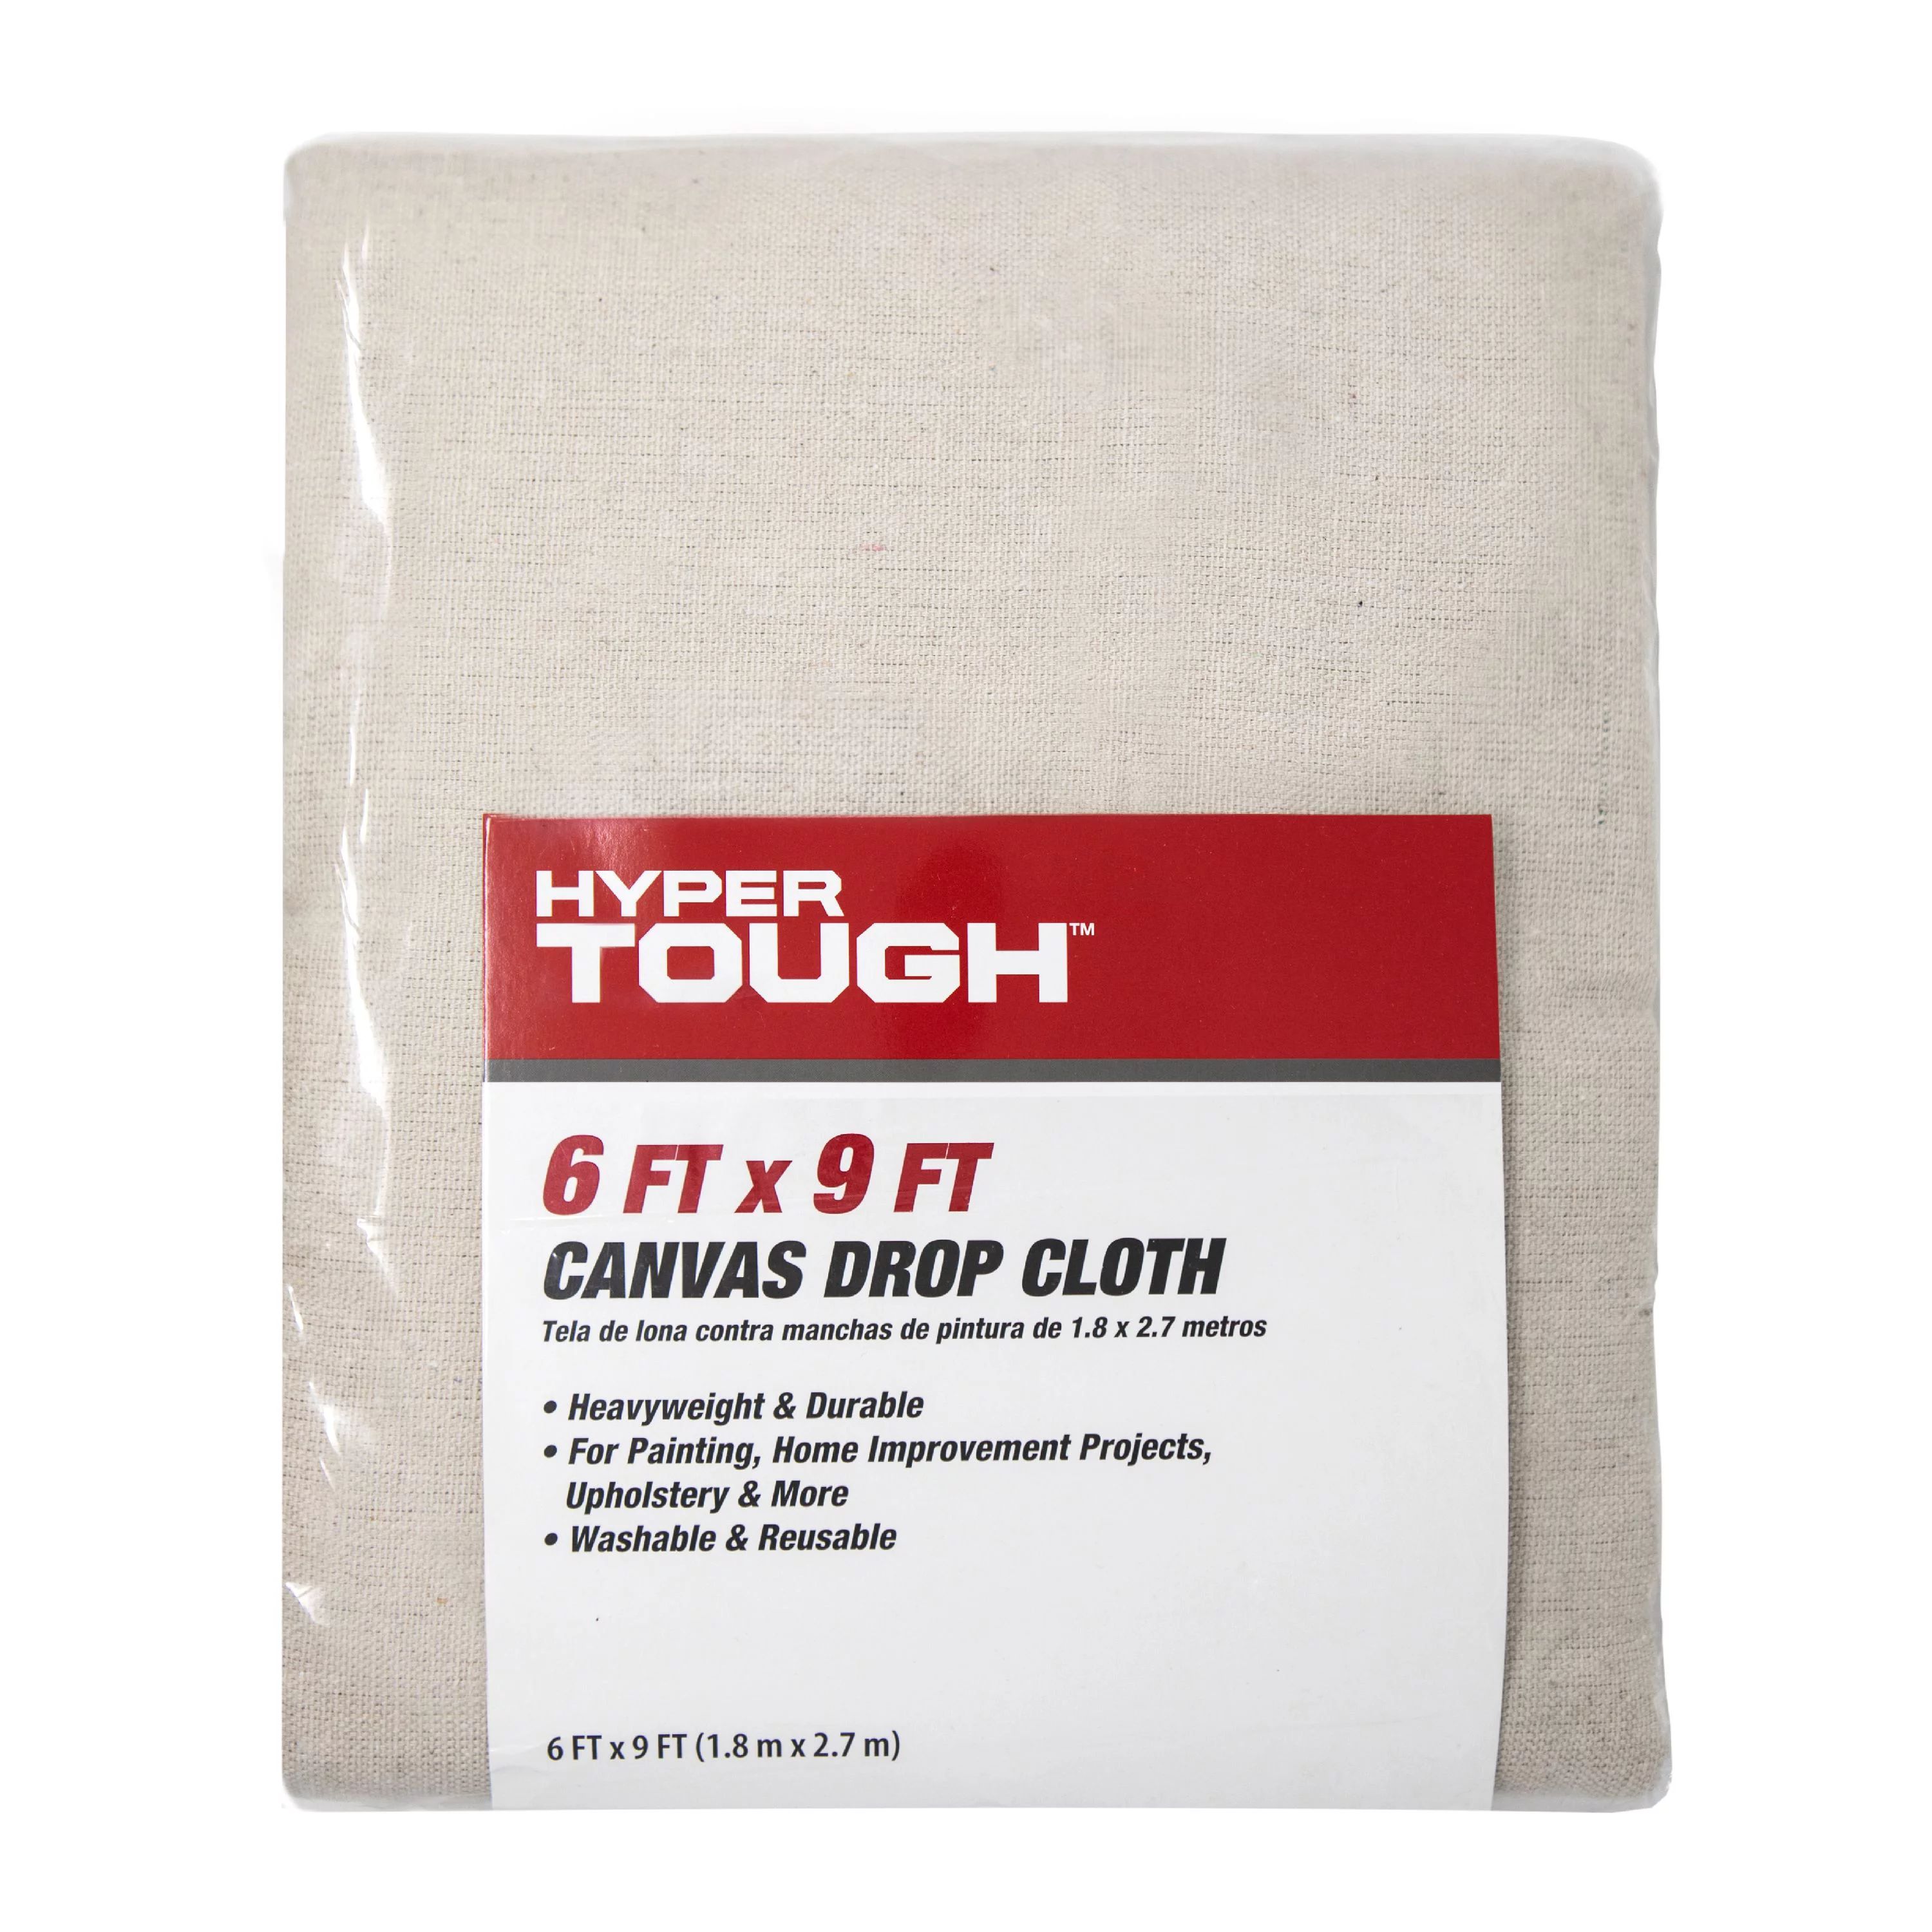 Hyper Tough Canvas Drop Cloth, 6' x 9' | Walmart (US)